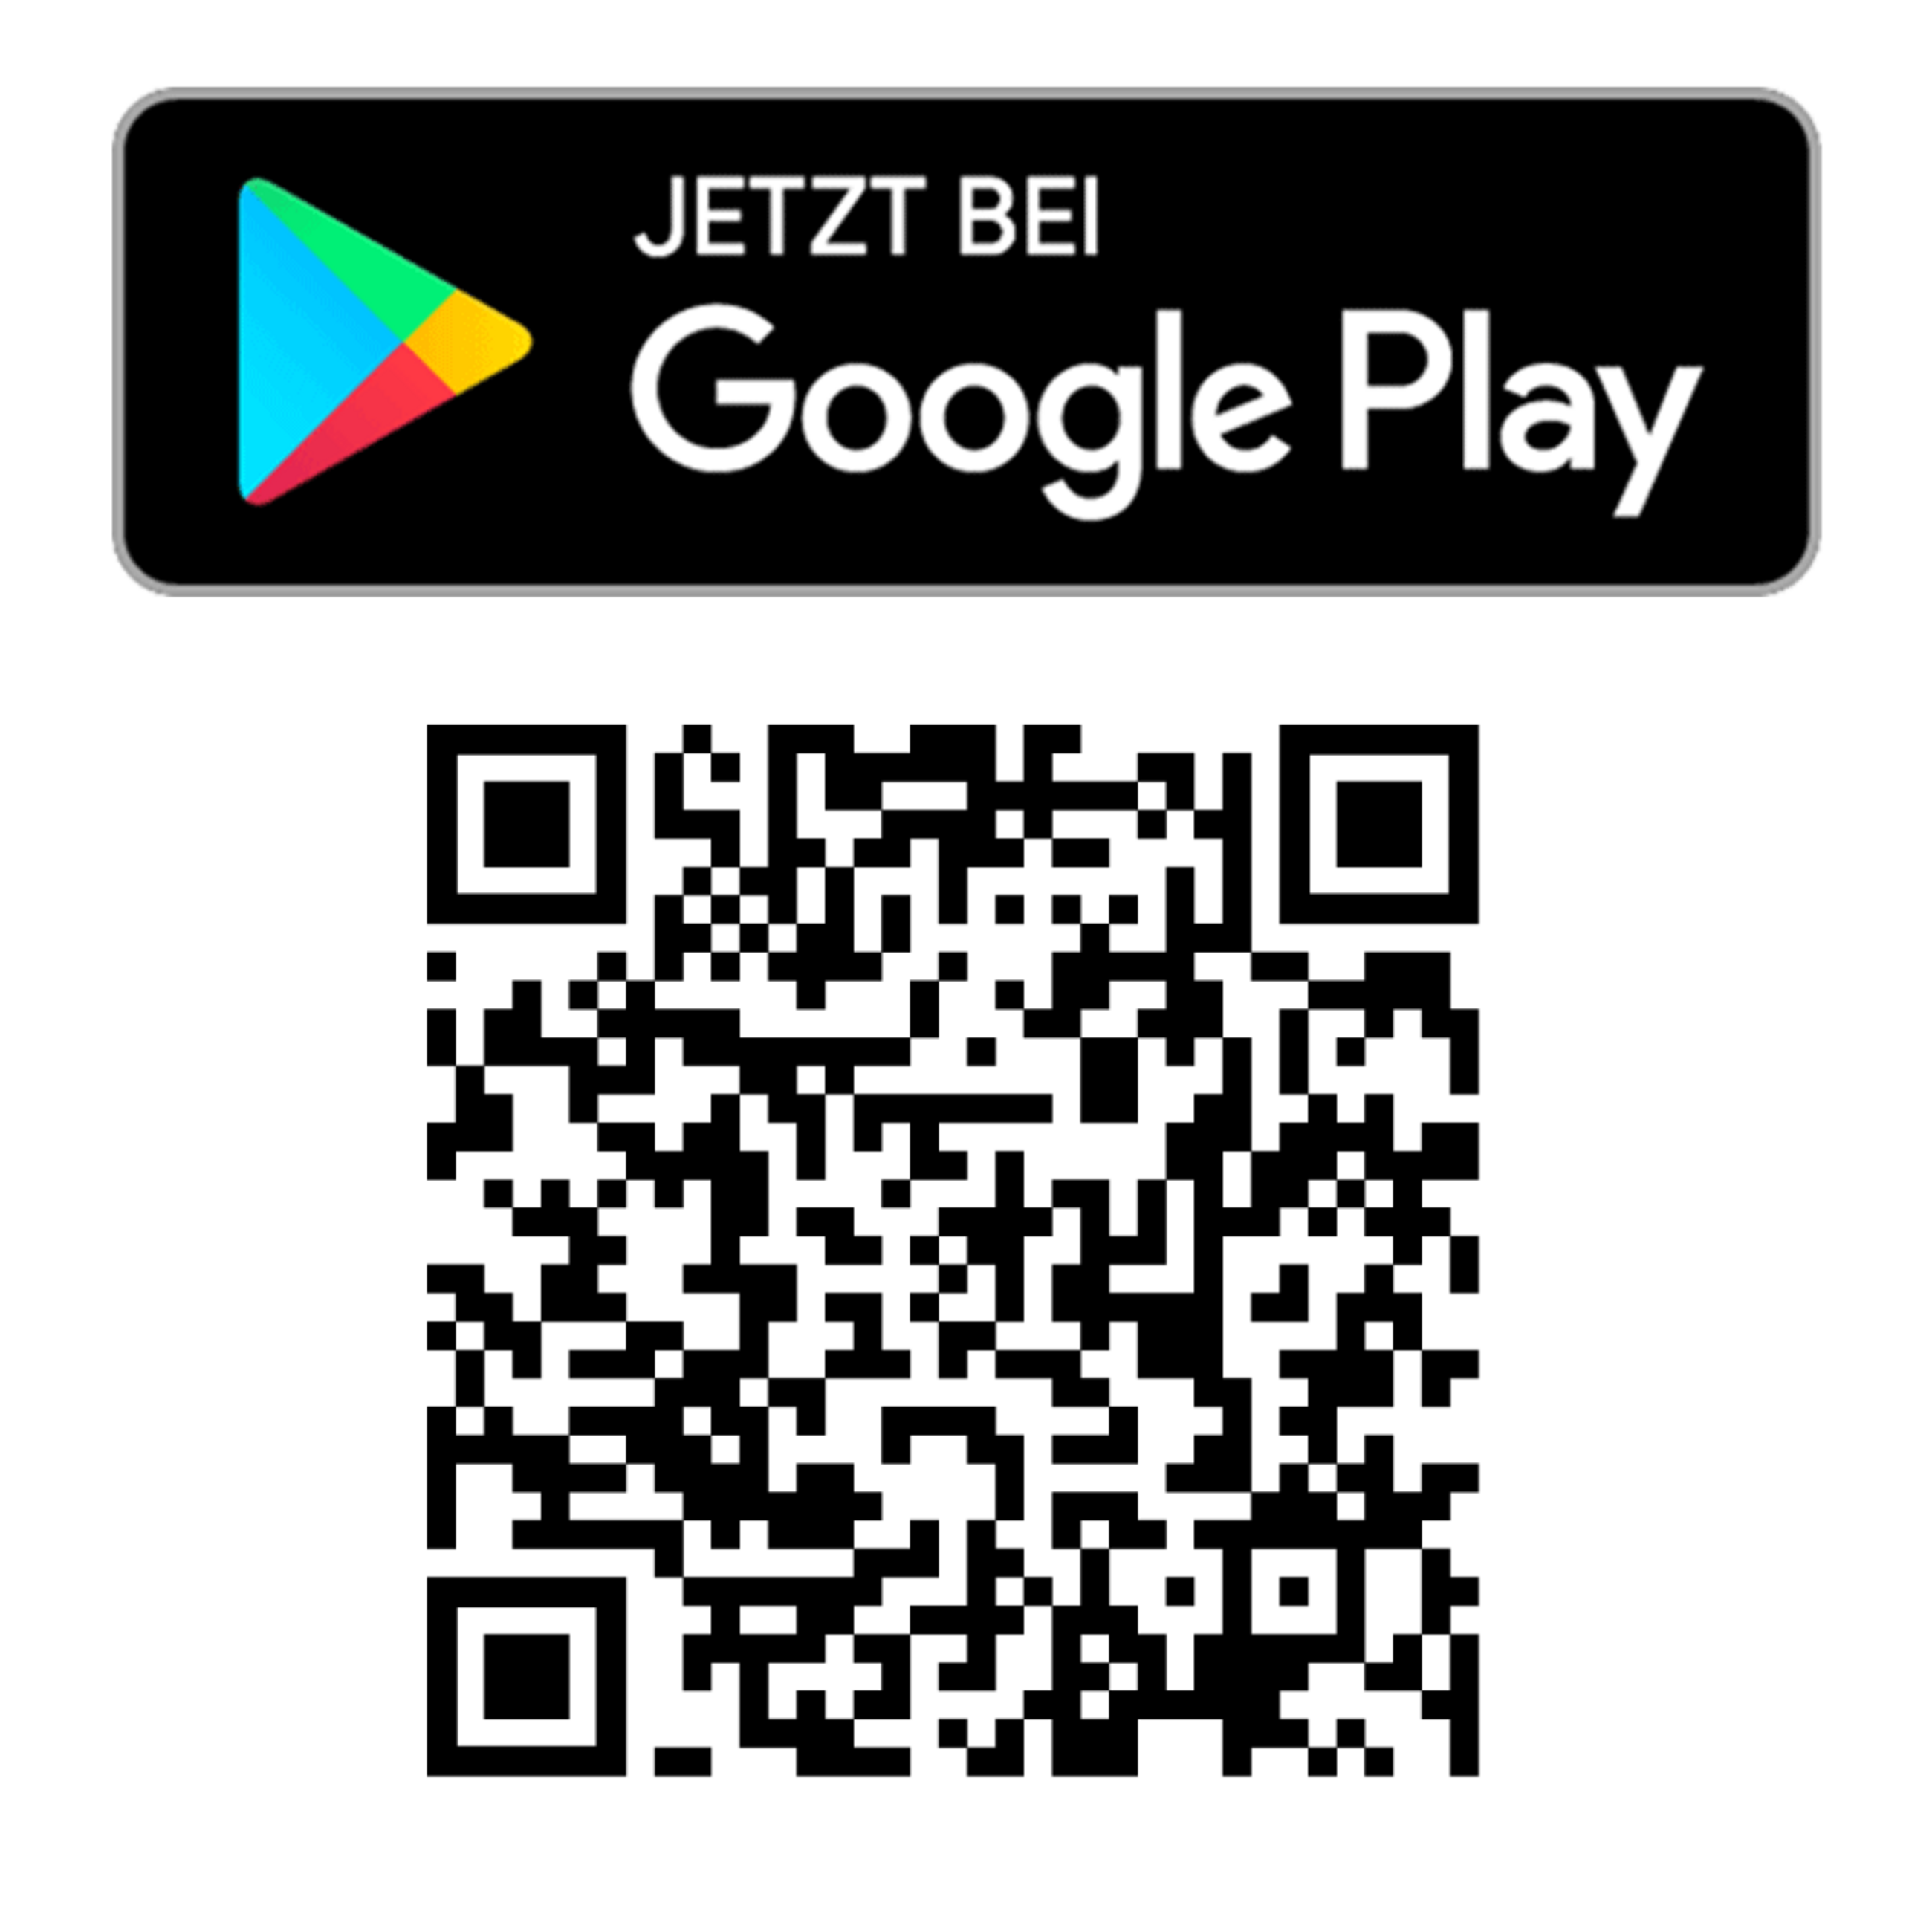 QR-Code zum Play-Store für Android Geräte